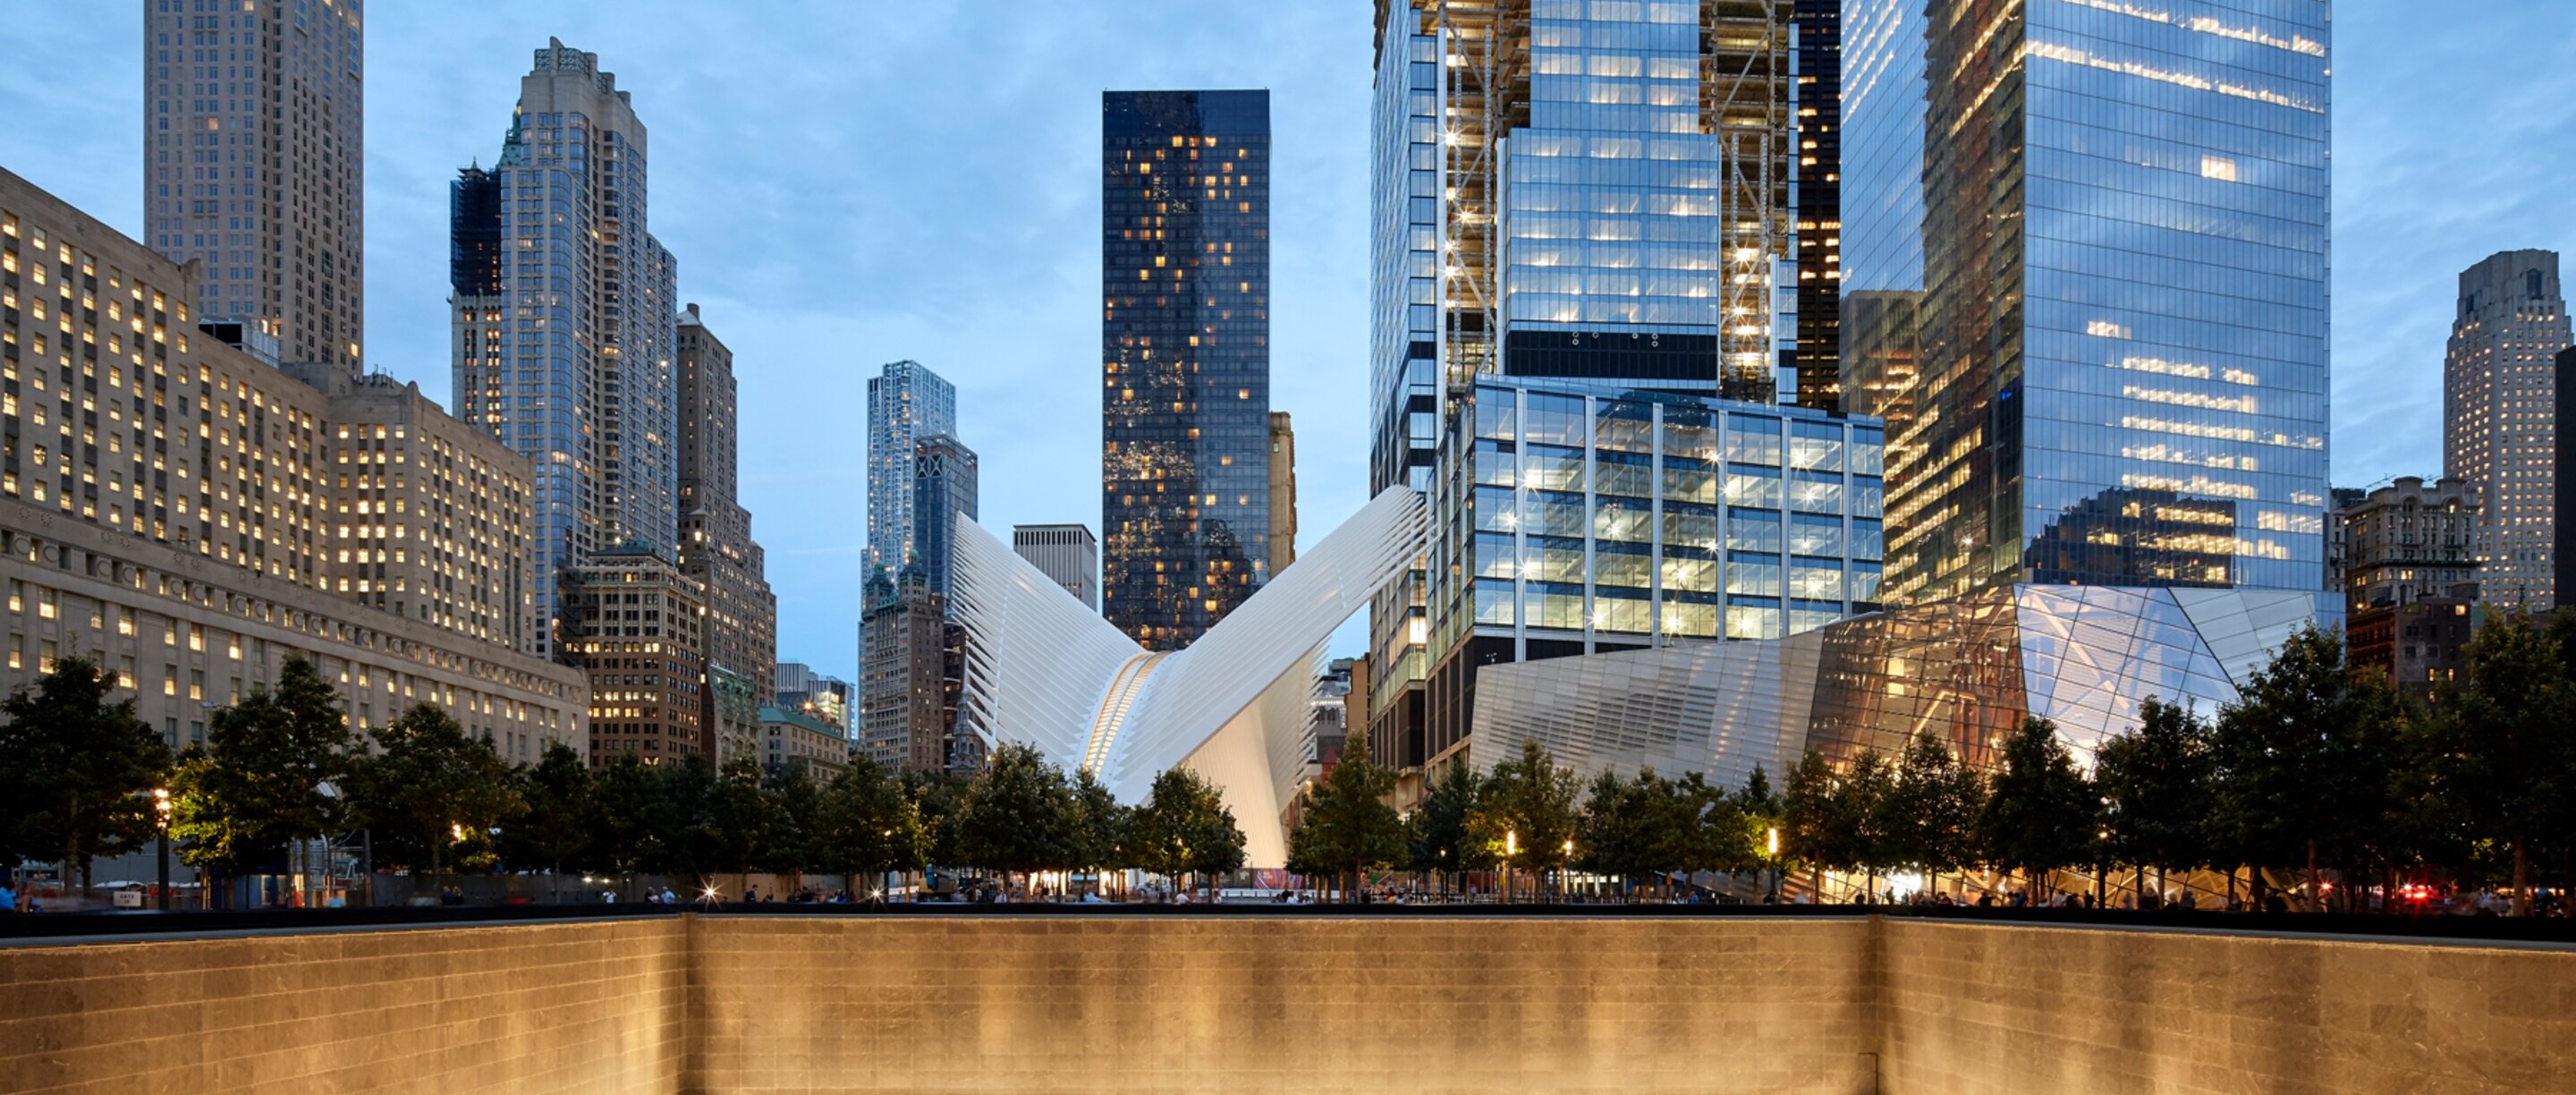 "Transportation Hub" Fassadengestaltung, Aluminium, New York | © Osugi, Shutterstock